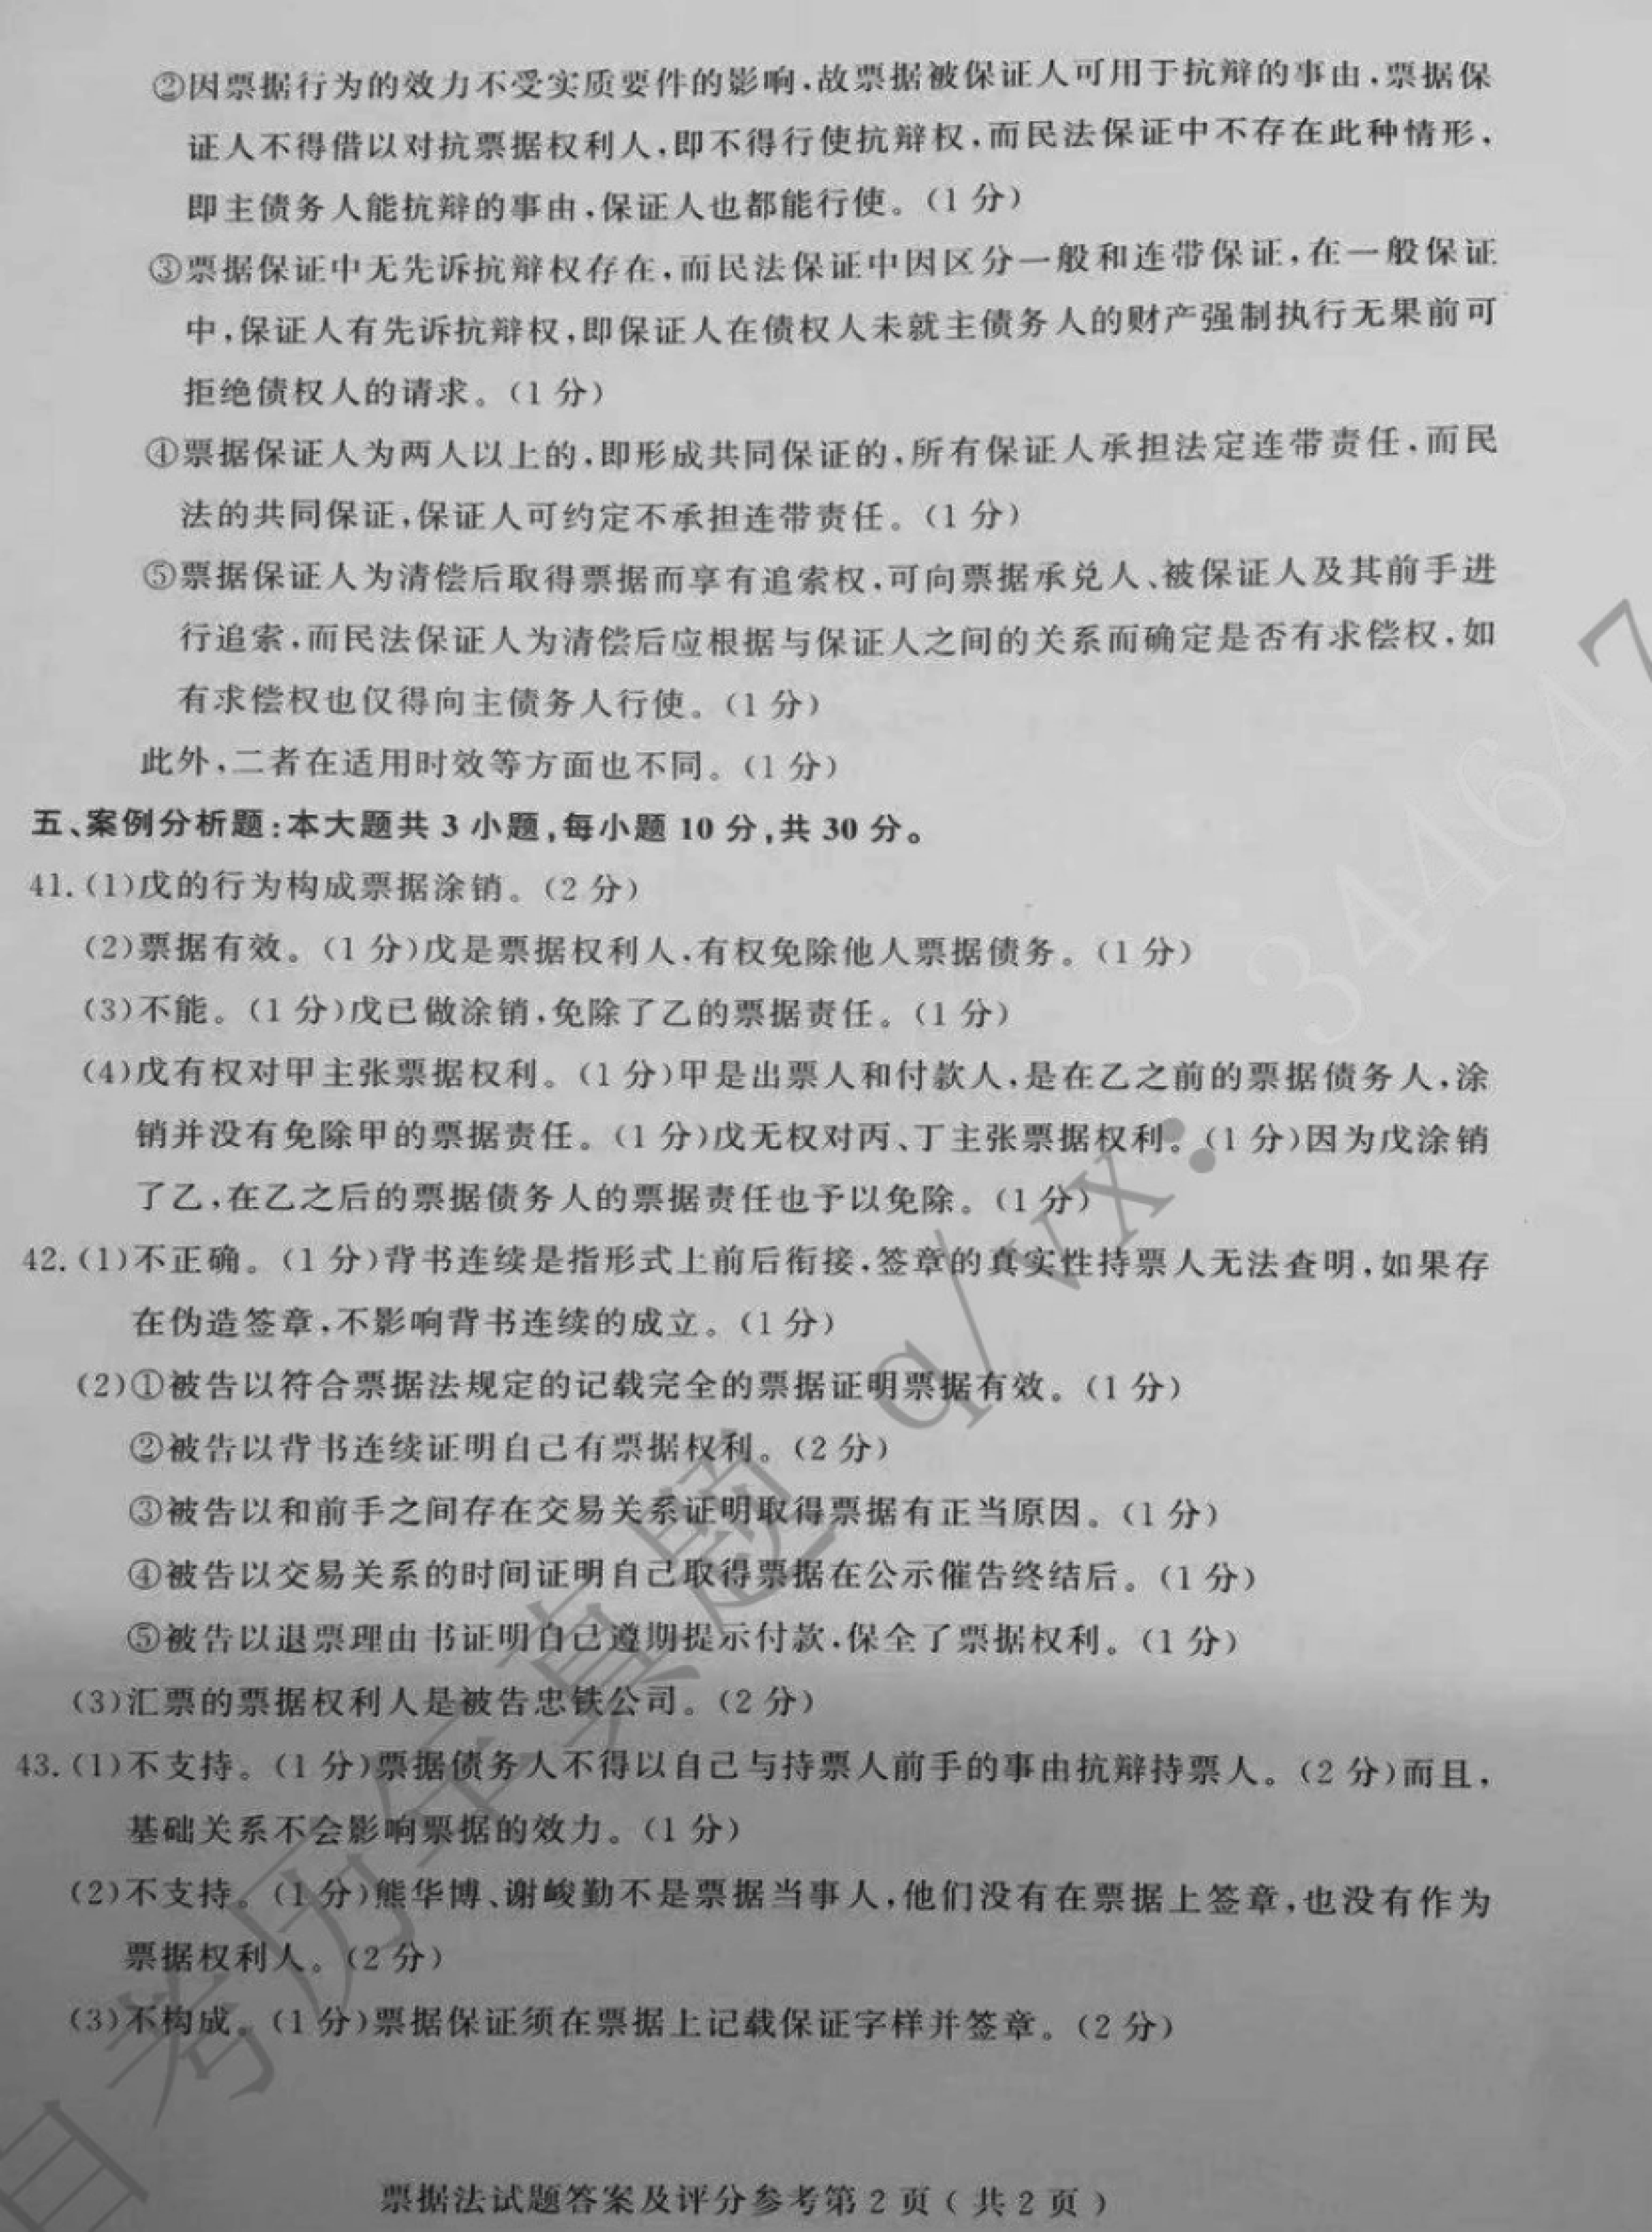 贵州省2019年10月自考00257票据法真题及答案